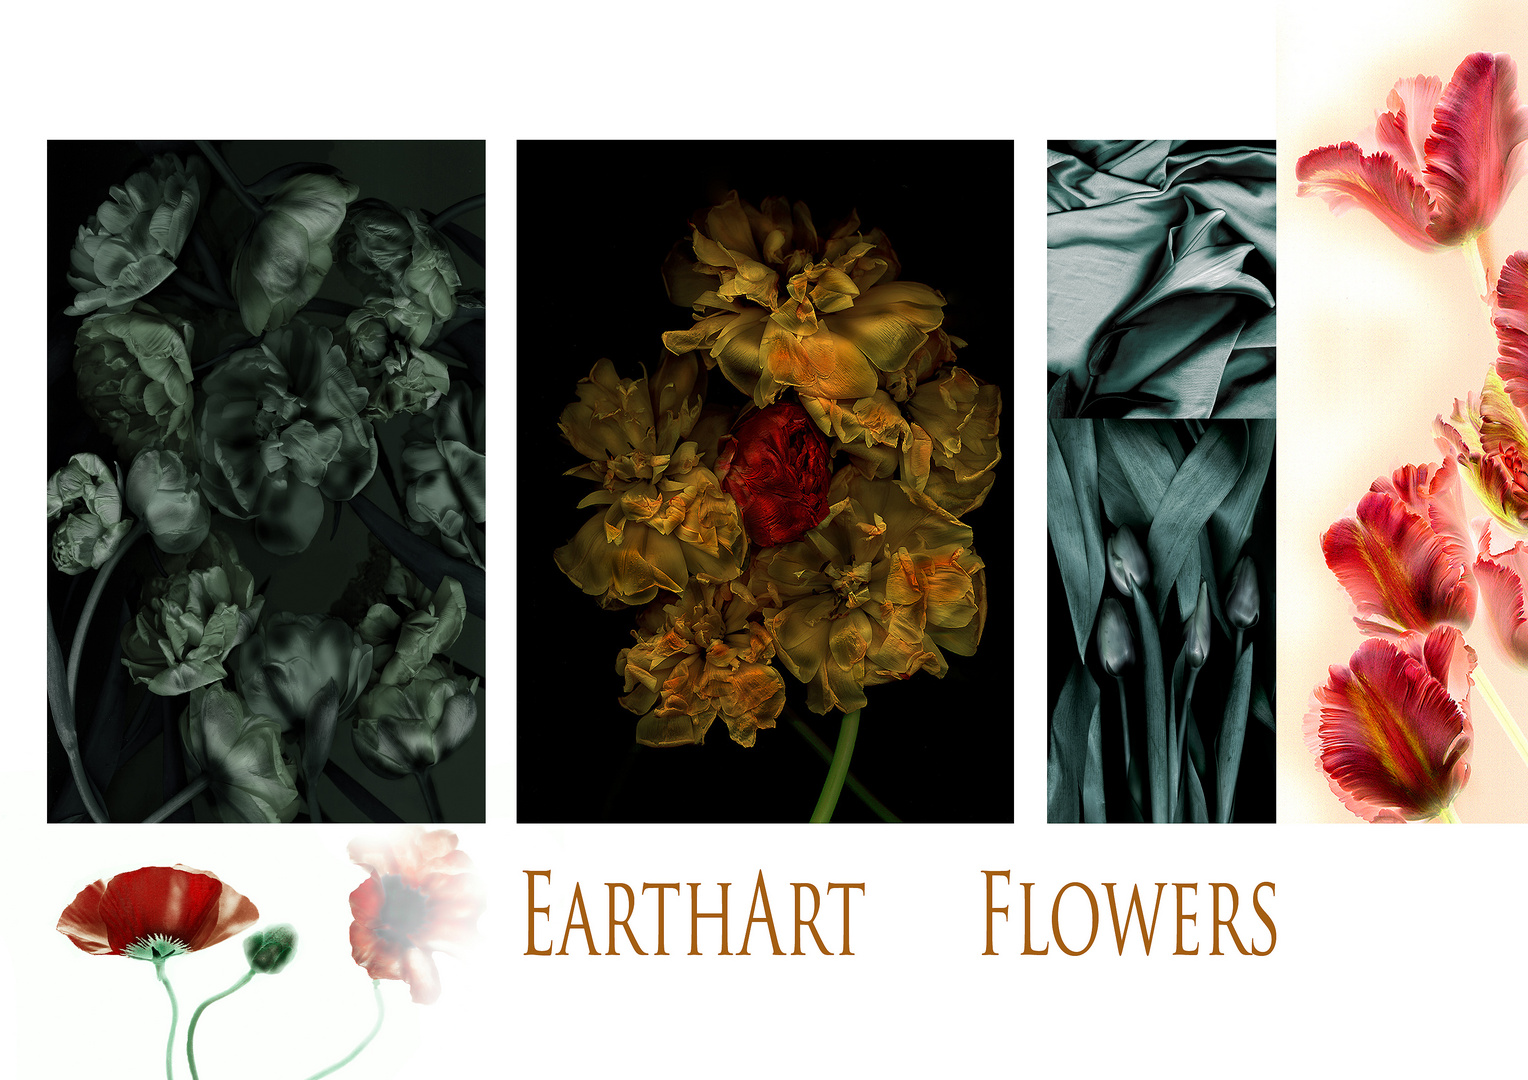 earthArt flower